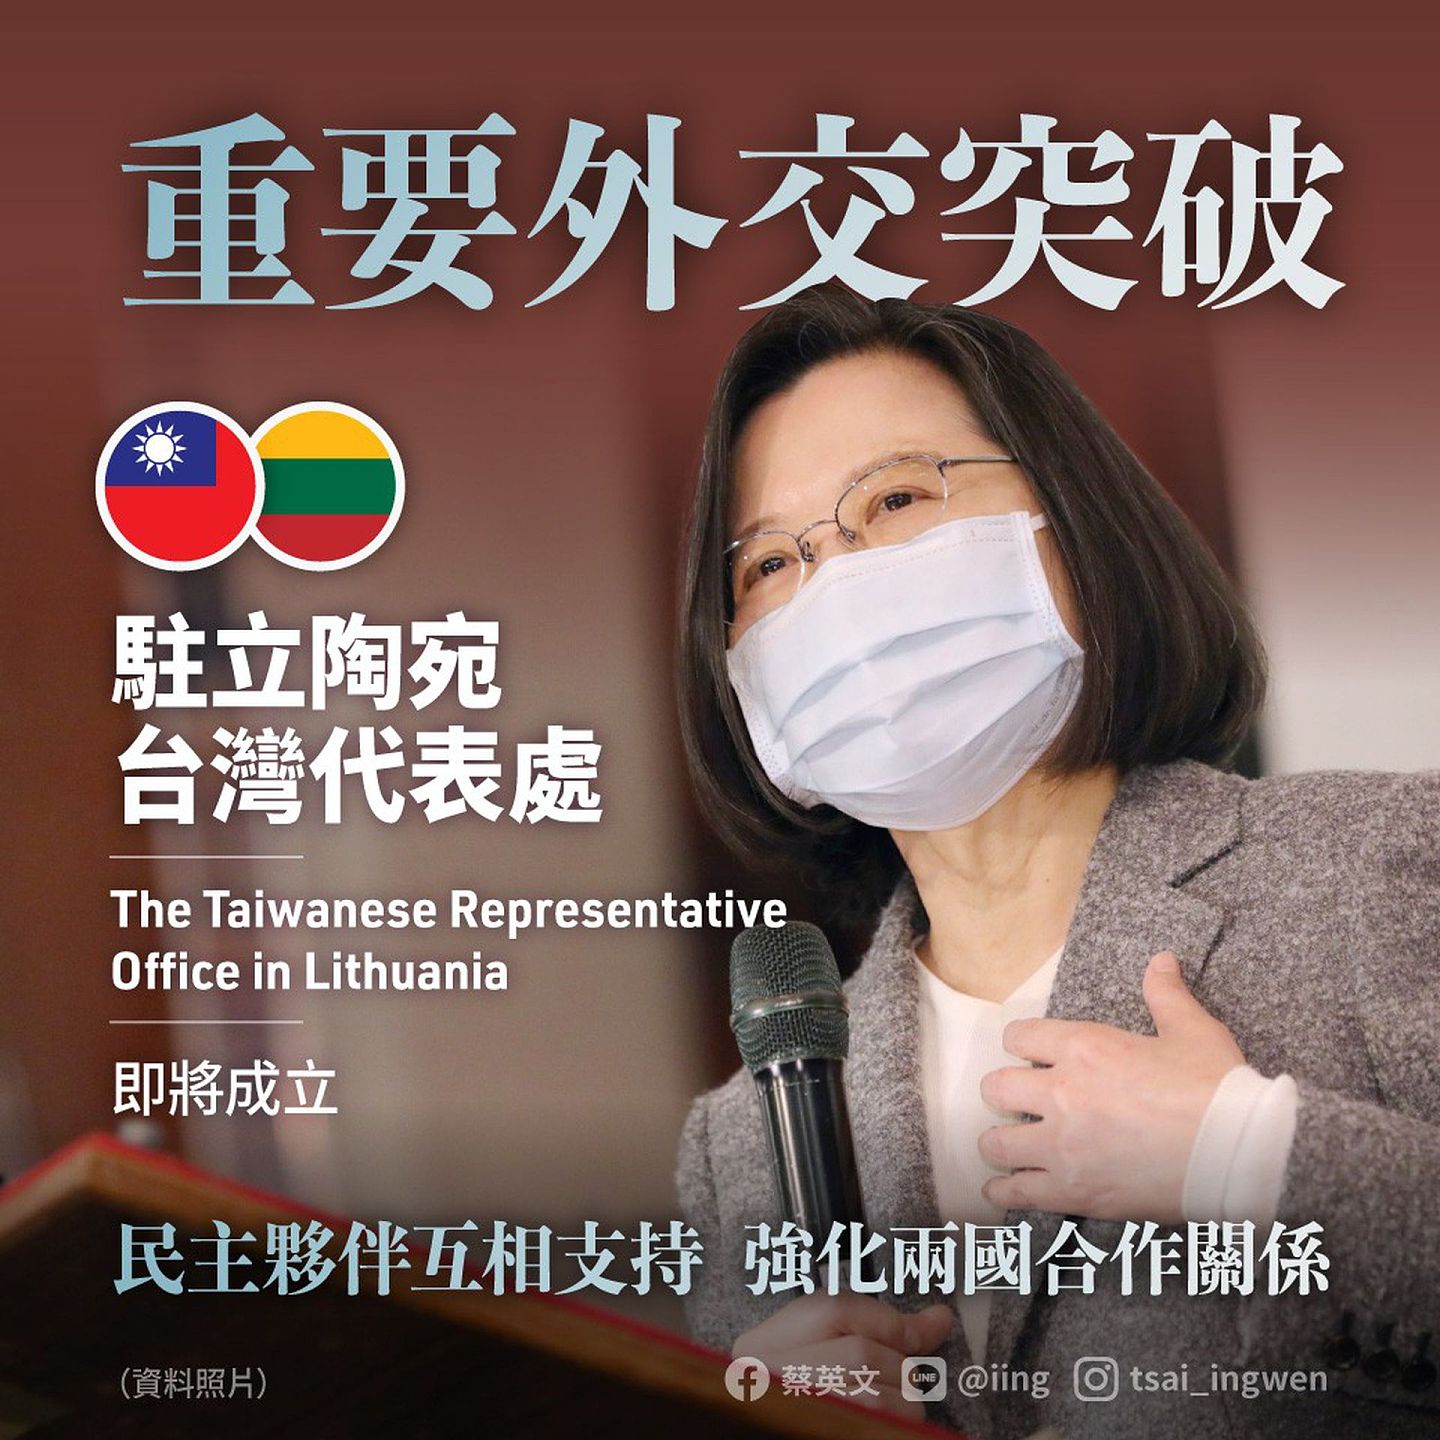 台湾将设立“驻立陶宛台湾代表处”，蔡英文称这是“重要外交突破”，台湾和立陶宛密切展开各面向的合作，双方互相设处，两国的友好关系将更上一层楼。（Facebook＠蔡英文）